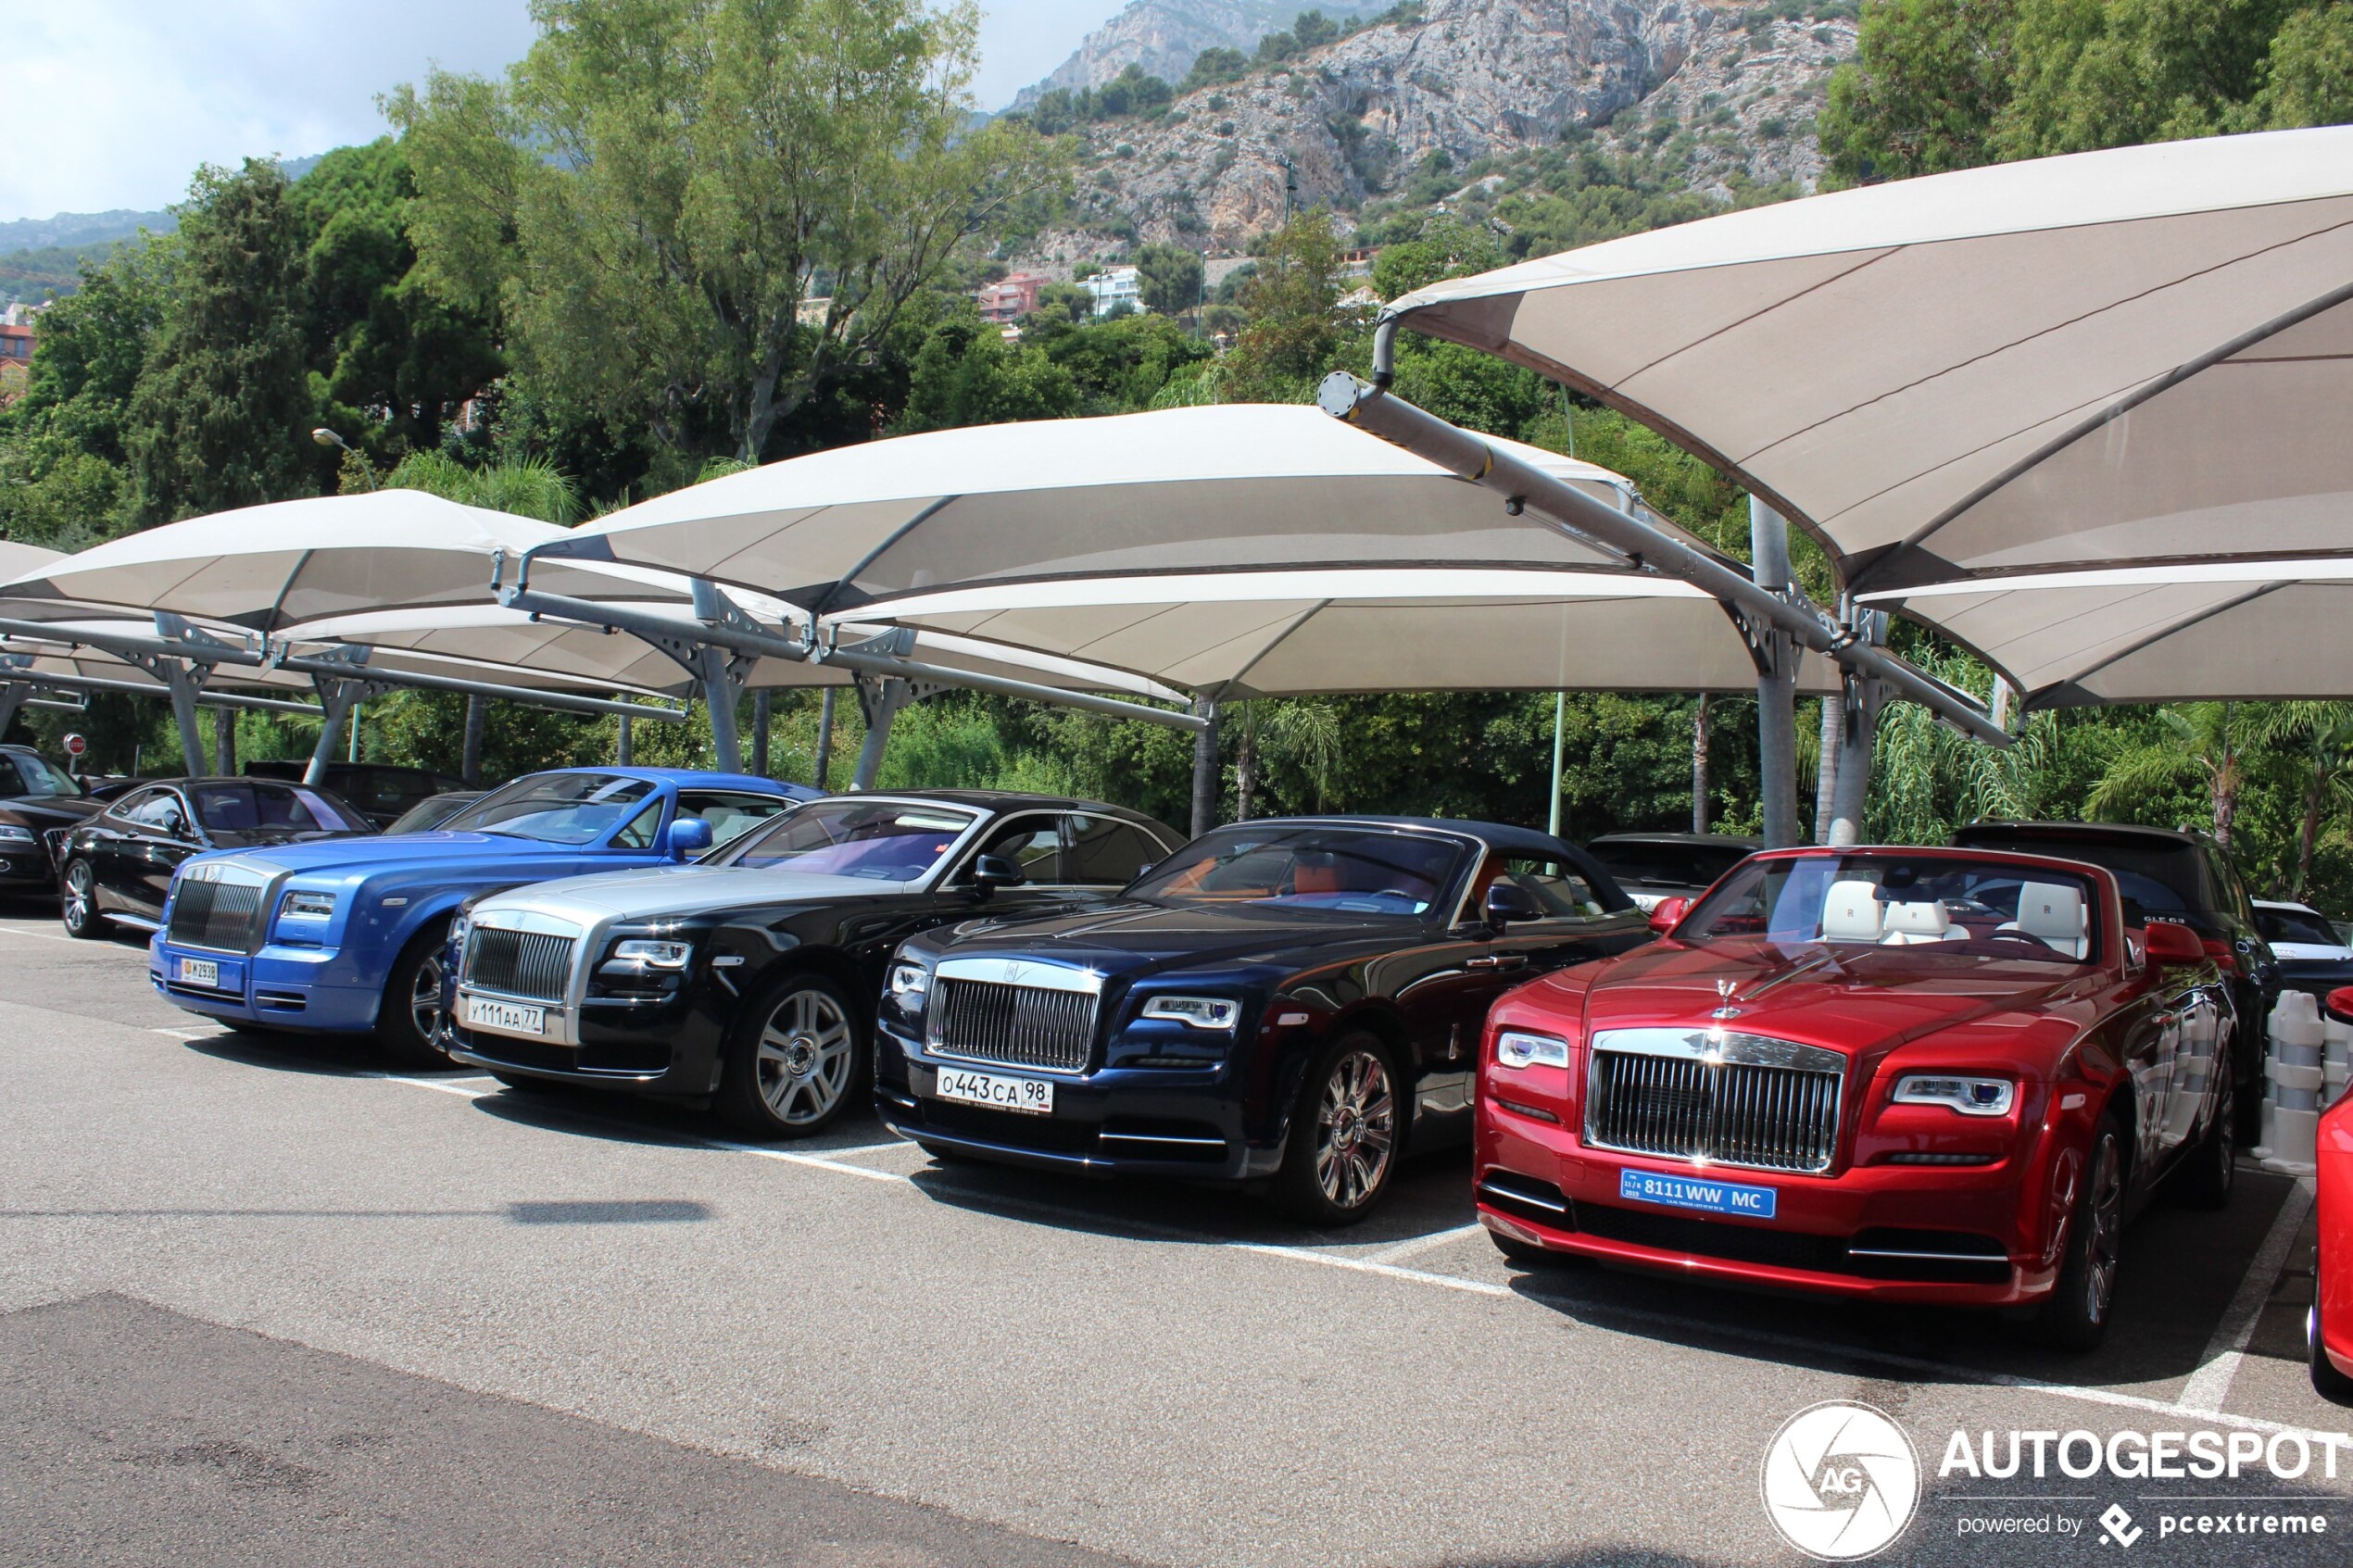 Met welke Rolls-Royce zou jij naar huis gaan?